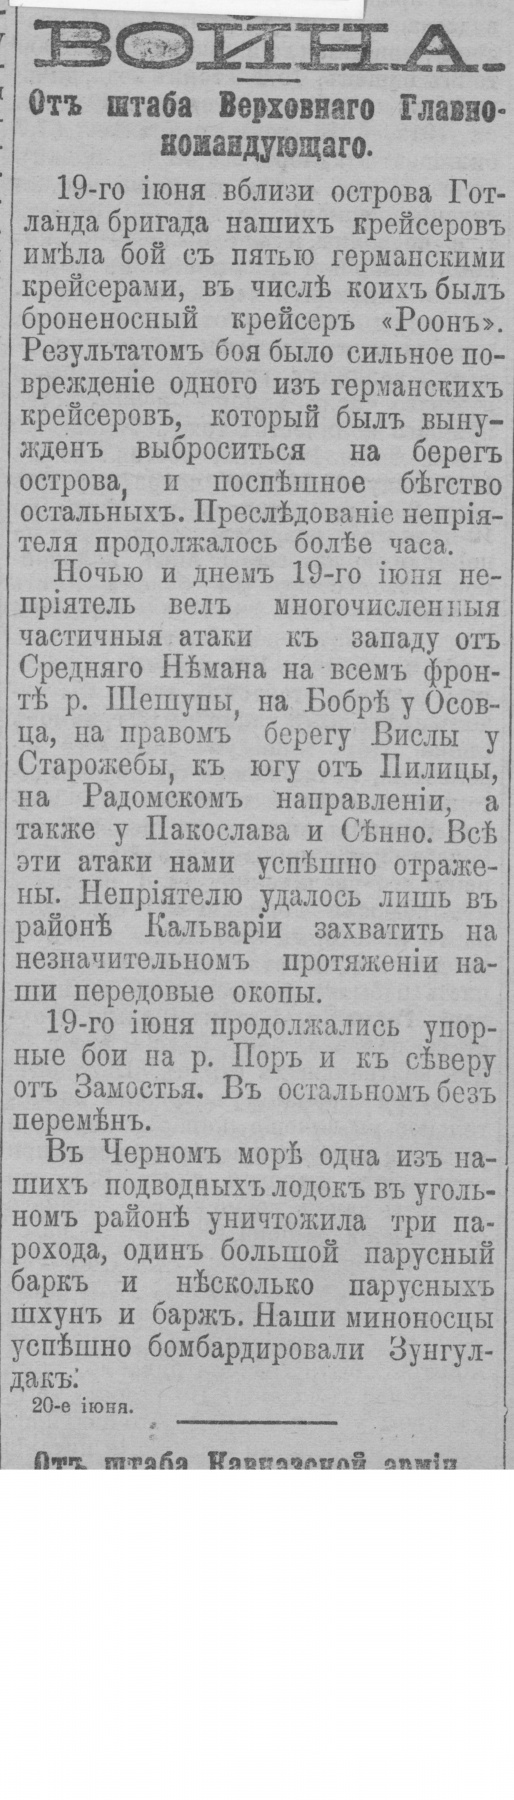 Правительственный вестник, № 136 от 21.06.1915